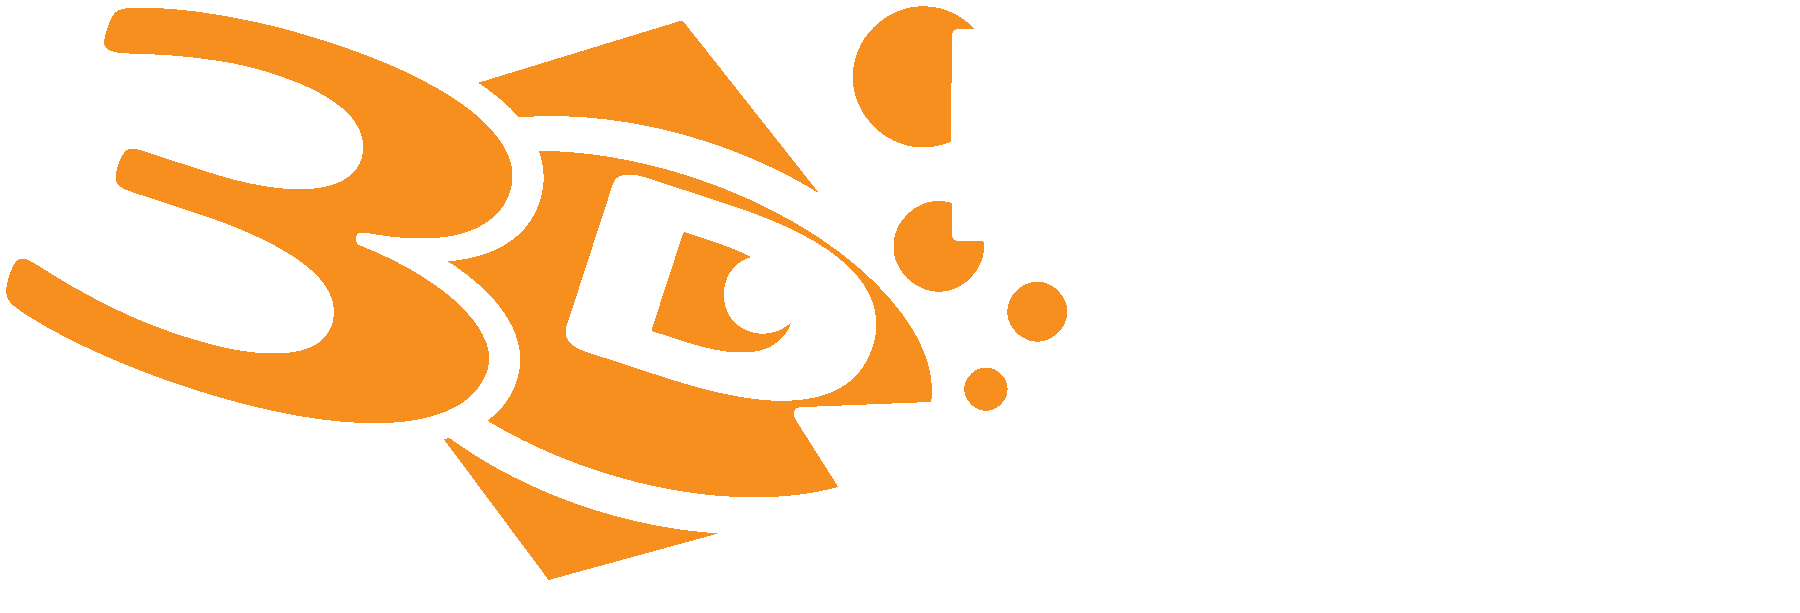 Dive! Dive! Dive! - Scuba Diving Costa Blanca